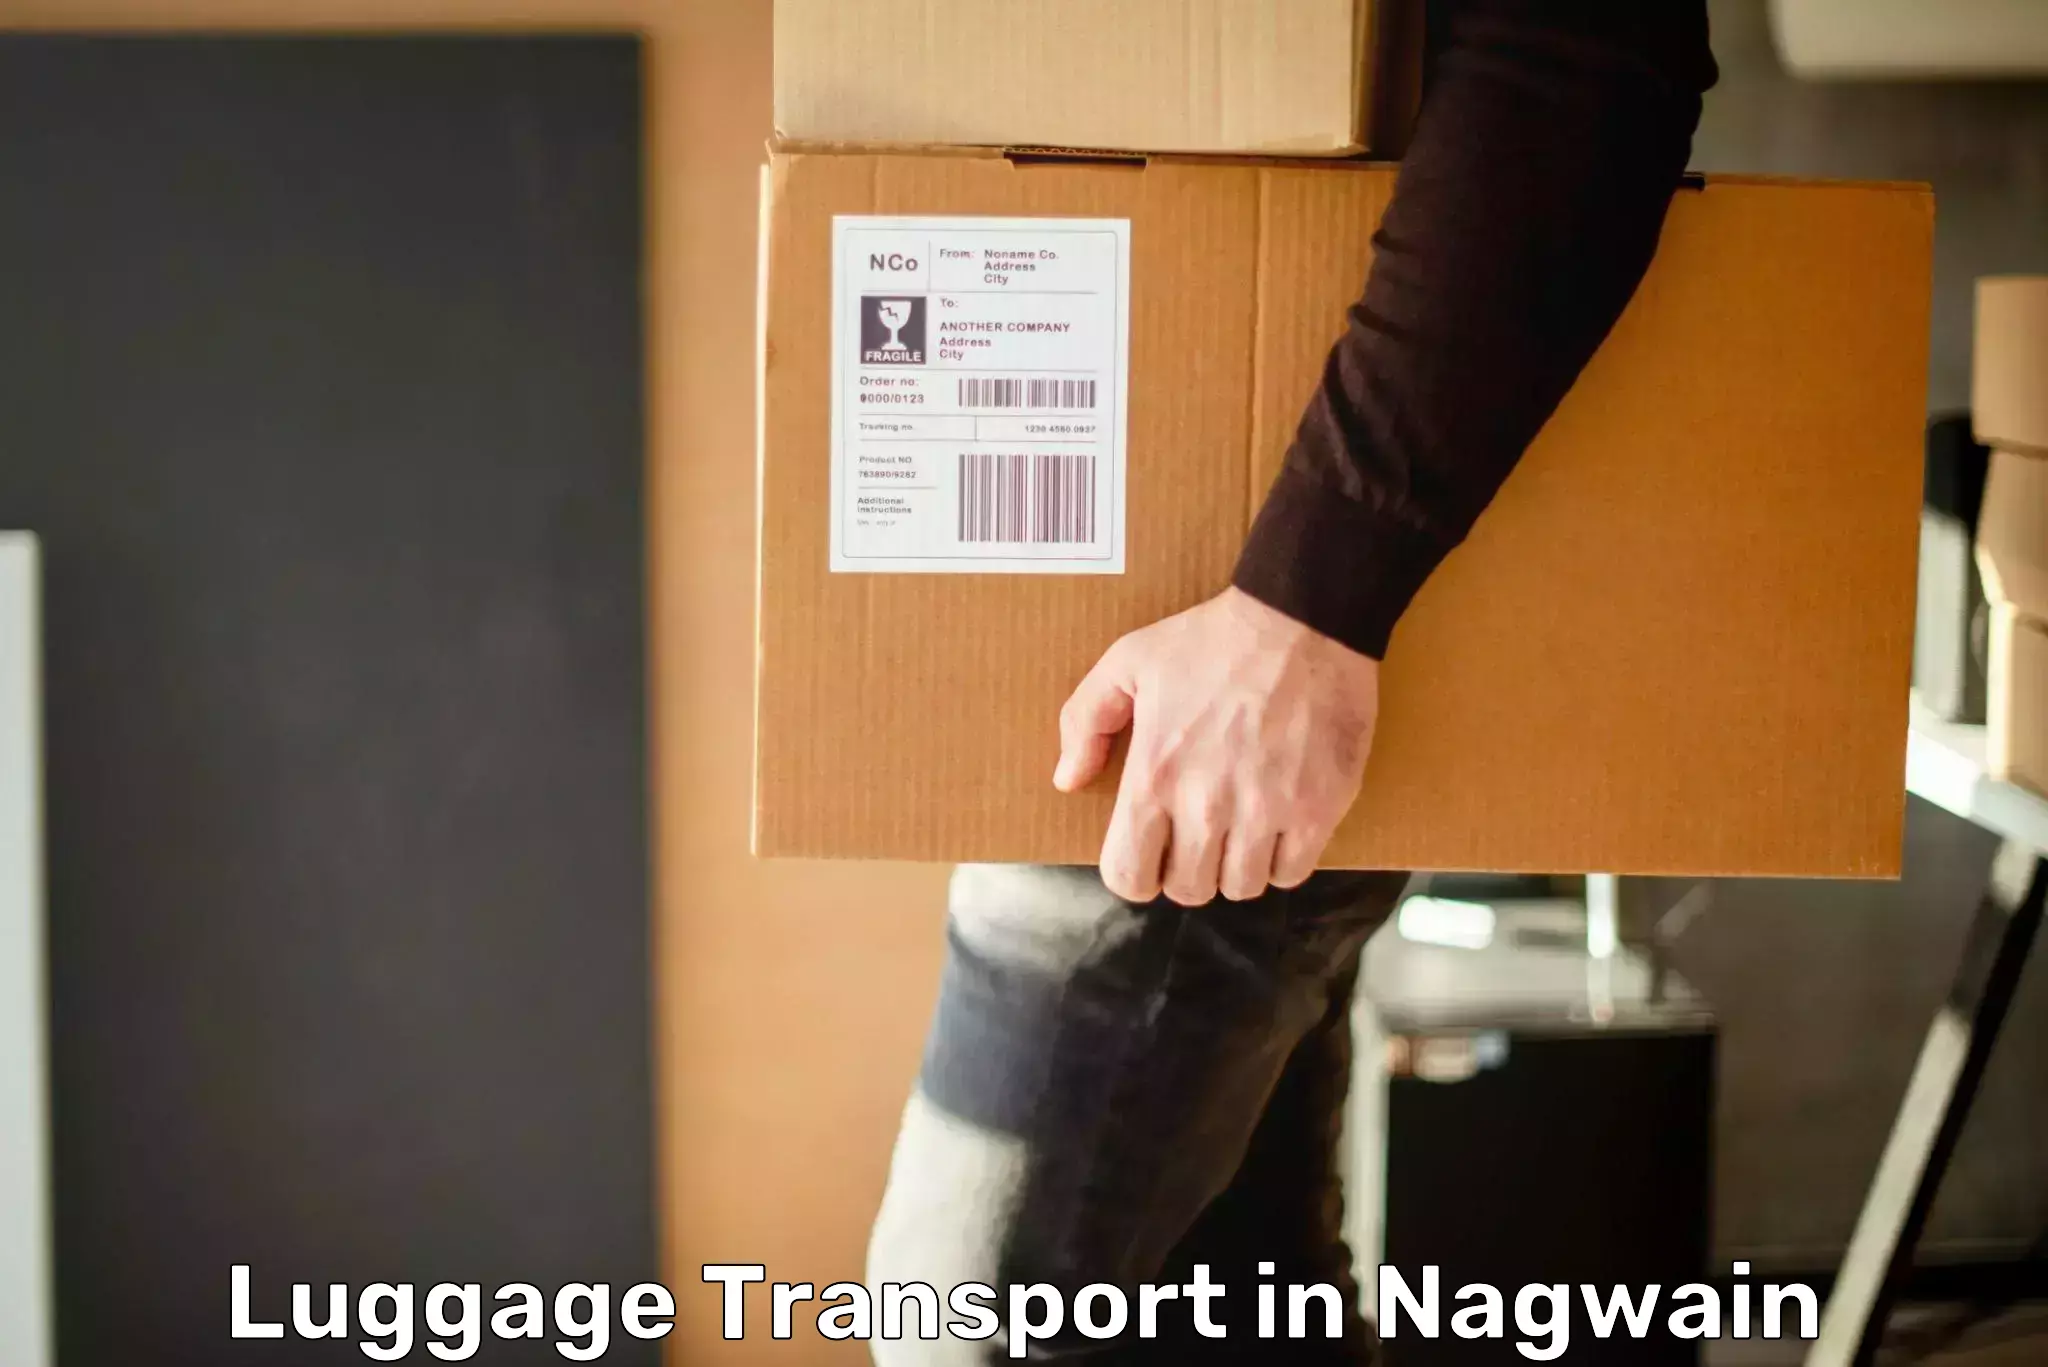 Domestic luggage transport in Nagwain